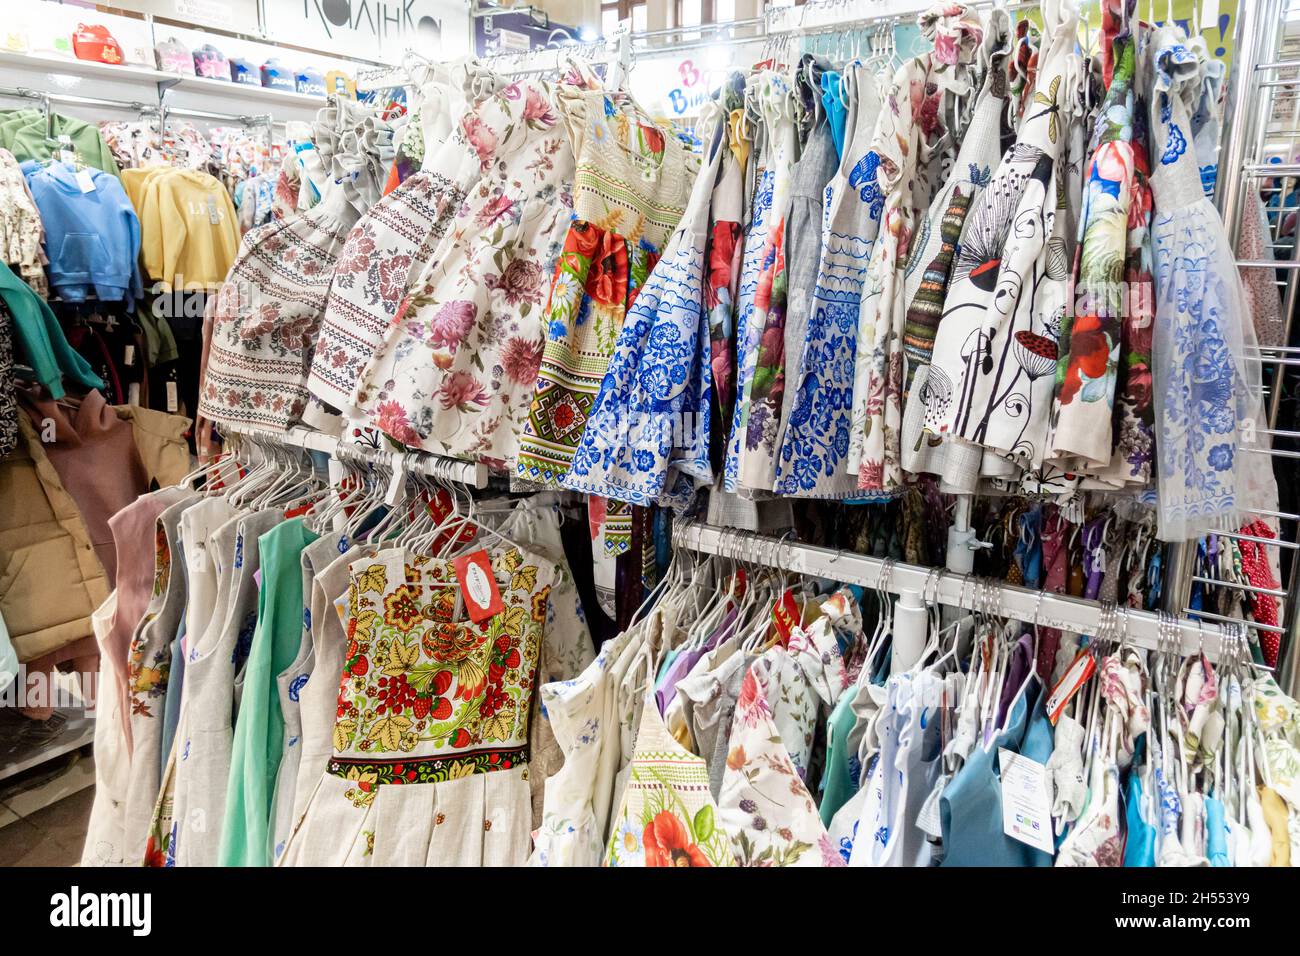 Textiles, vêtements, vêtements fabriqués à Belorus exposés dans le pavillon du Bélarus, centre d'expositions VDNKH, Moscou, Russie Banque D'Images